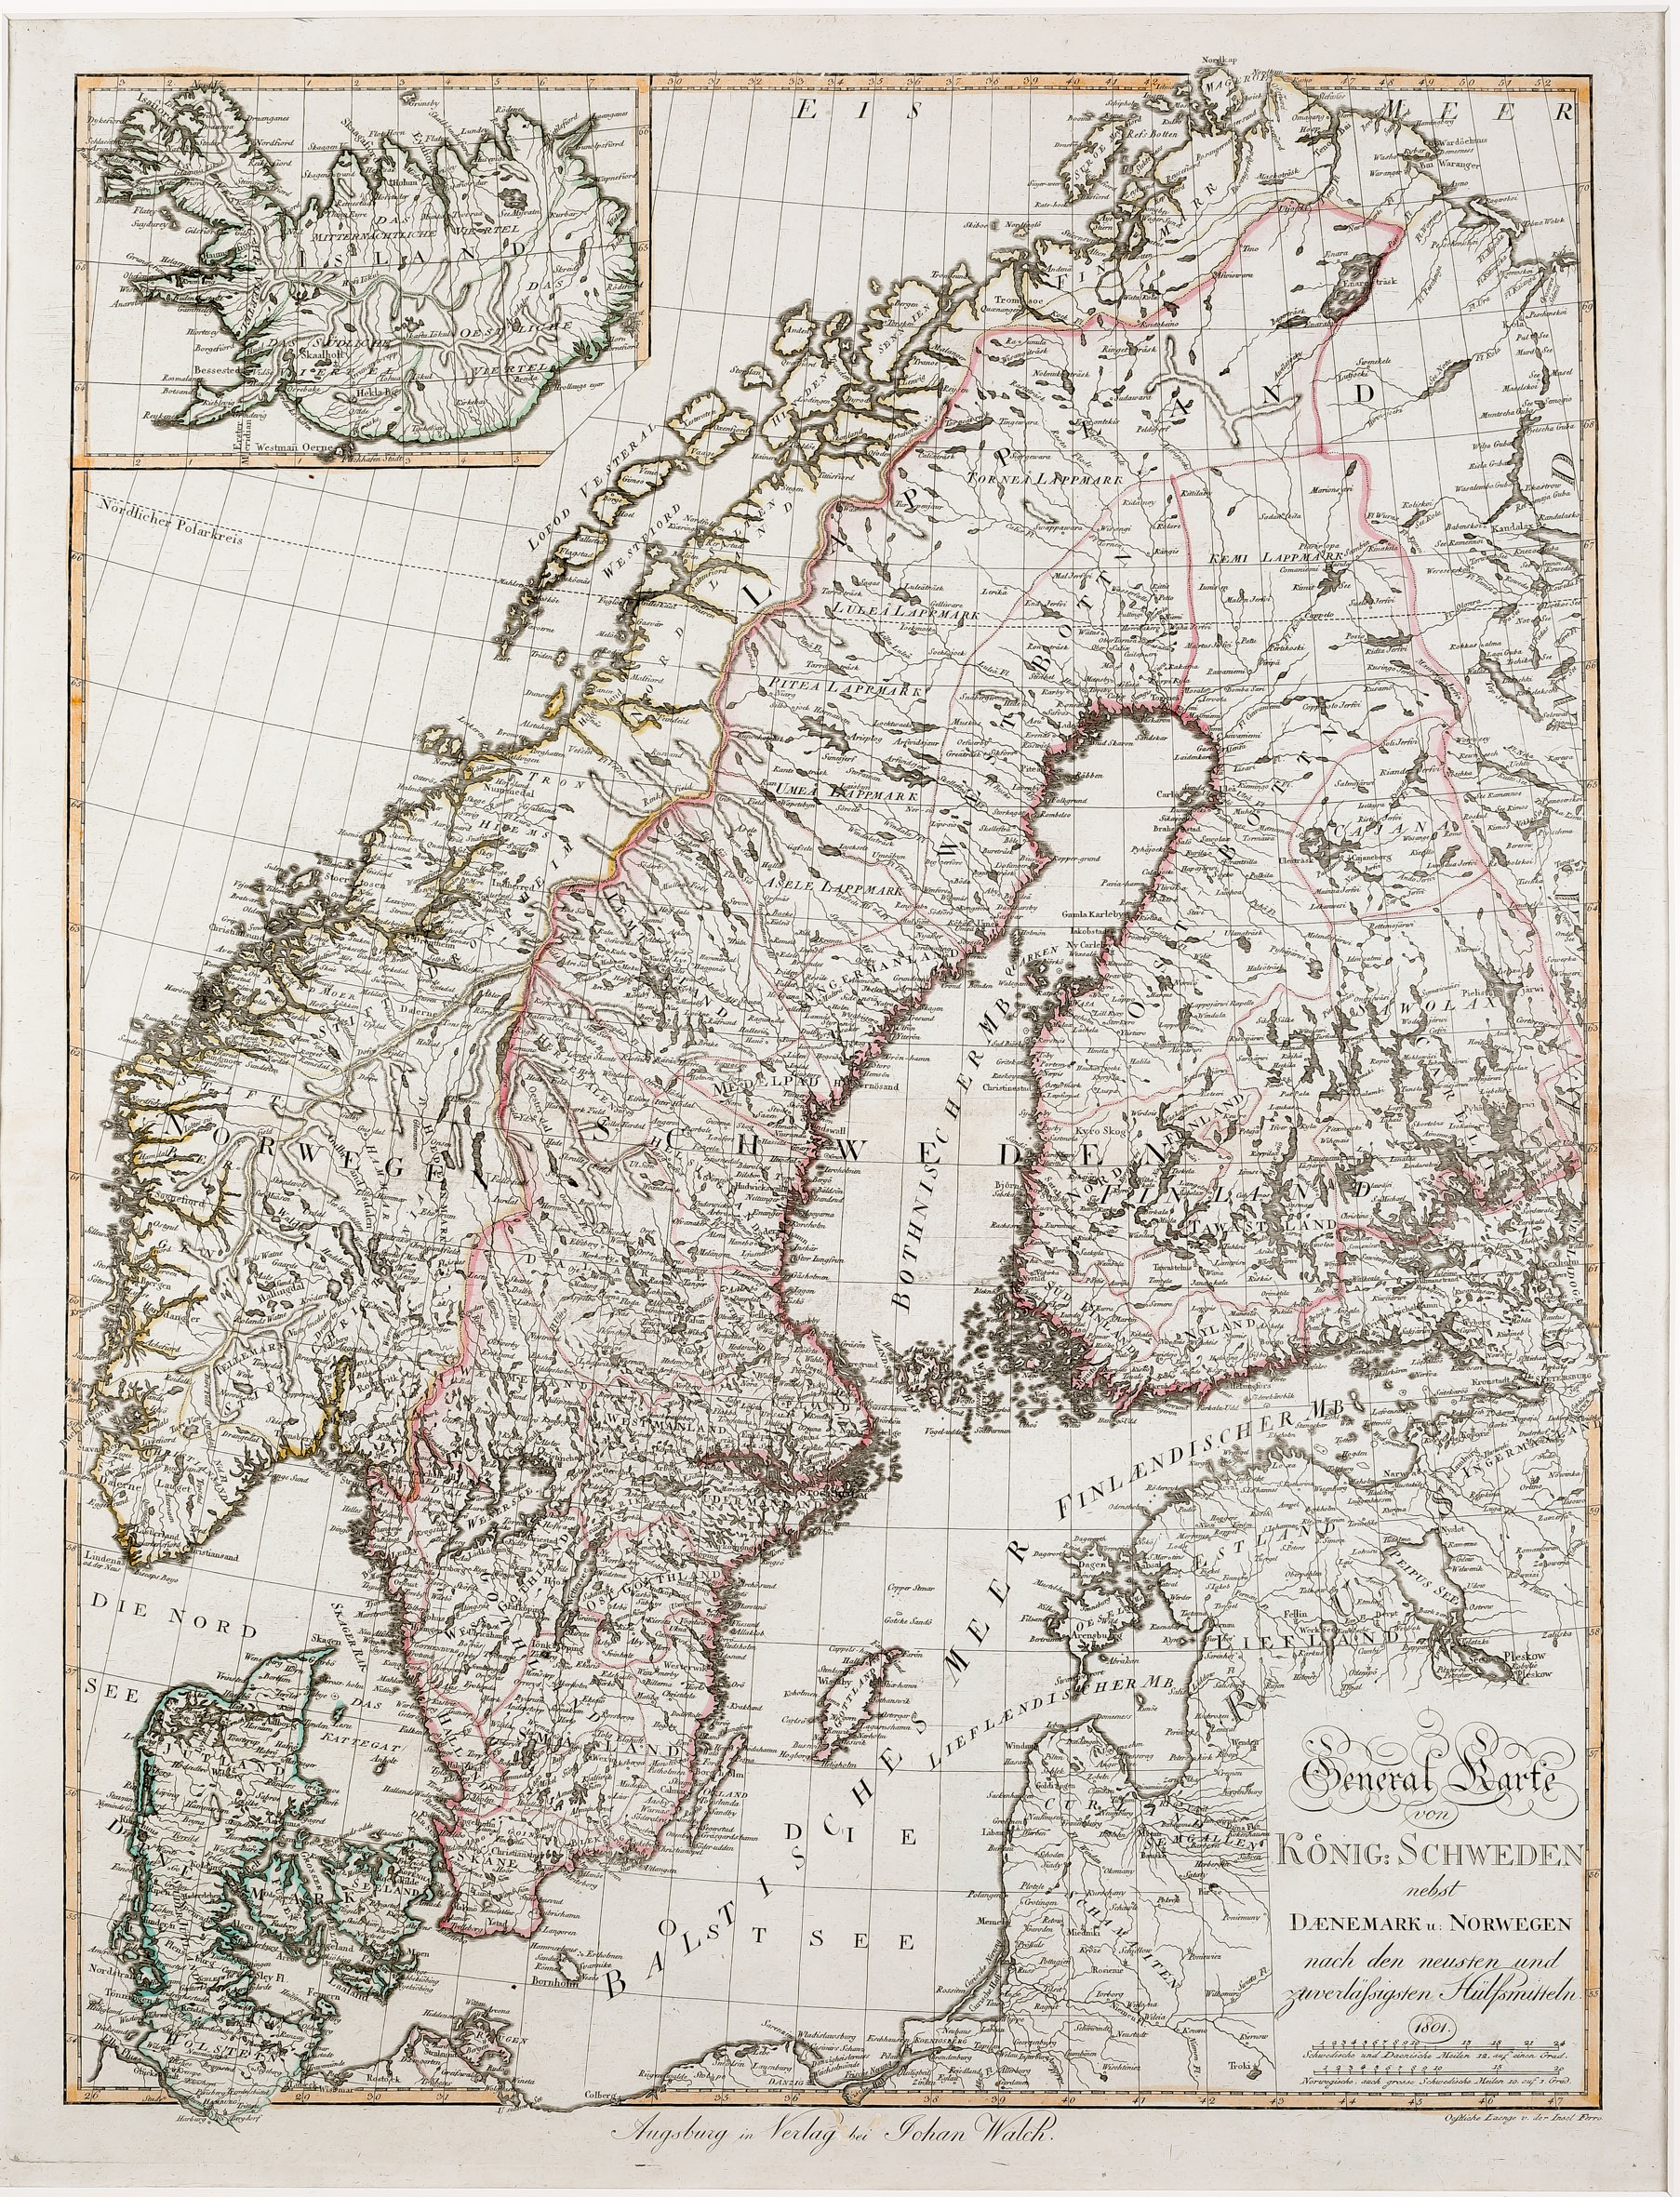 97. Generalkarte von König: Schweden nebst Daenemark u. Norwegen  nach den neuesten und zuverlässigsten Hilfsmitteln 1801